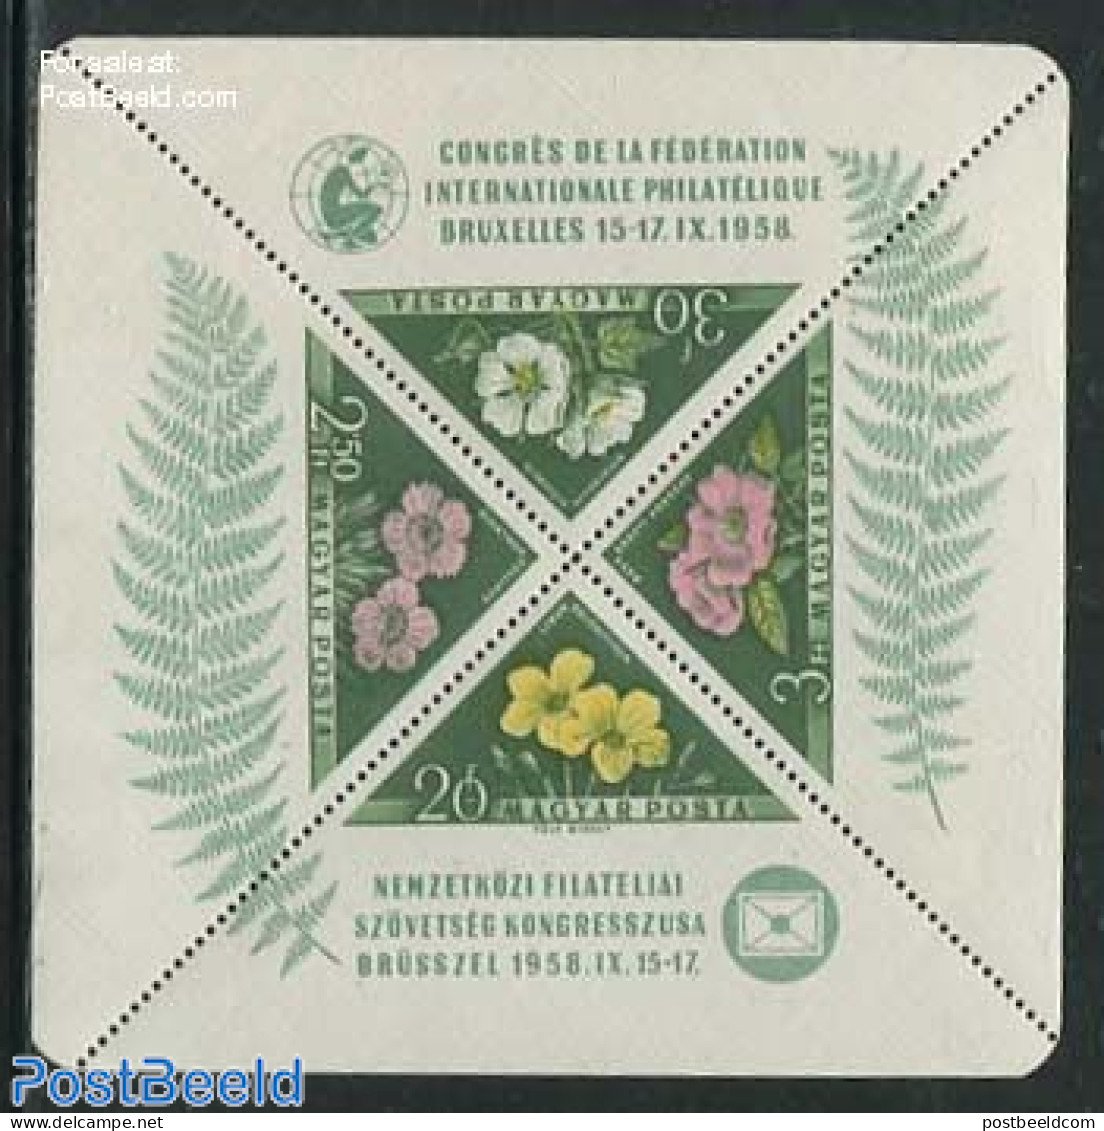 Hungary 1958 FIP Congress S/s, Unused (hinged), Nature - Flowers & Plants - Philately - Ongebruikt